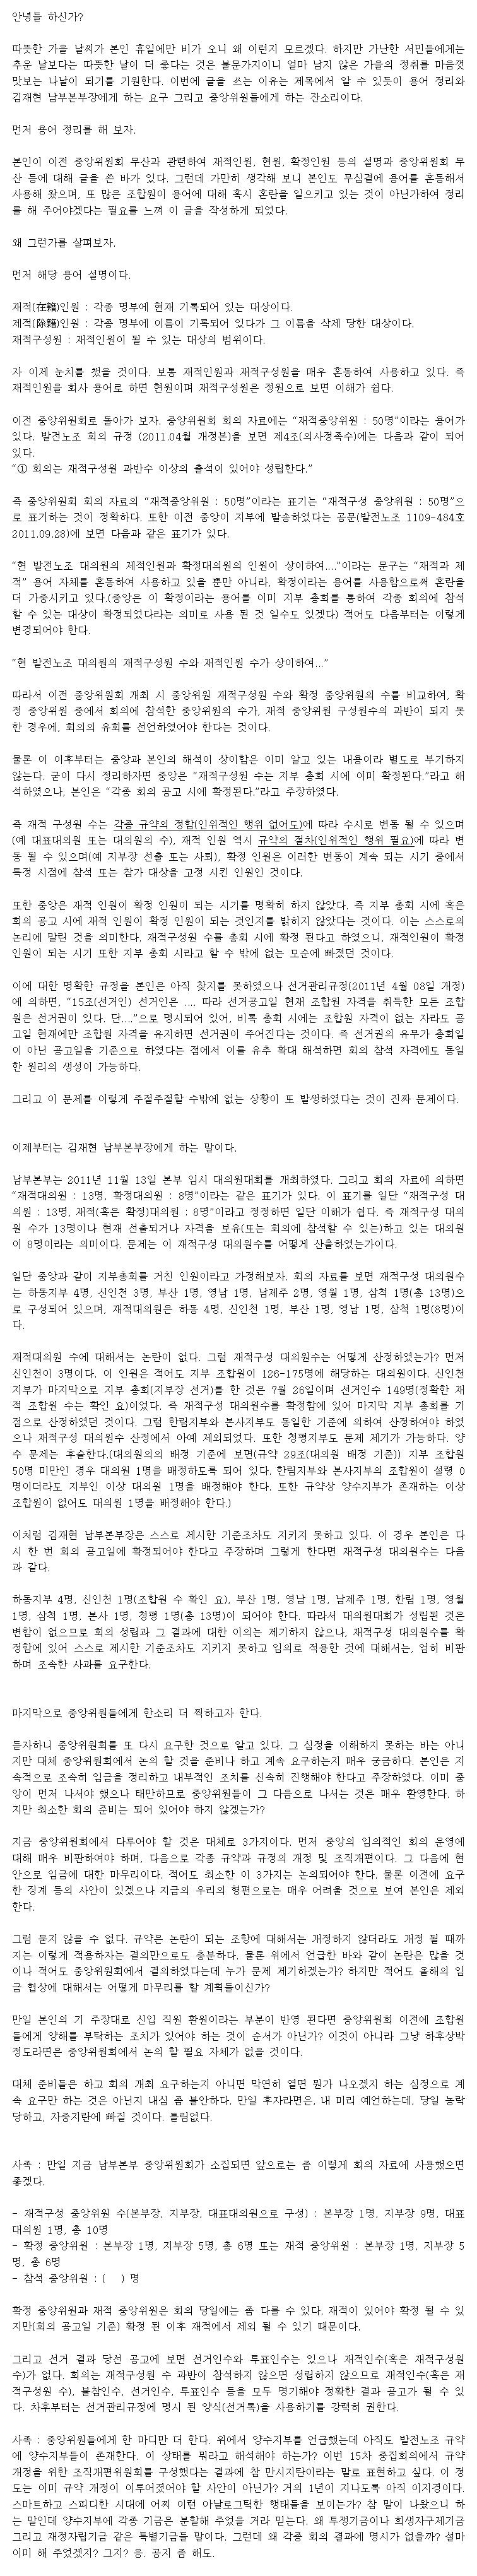 용어 정리 및 김재현 남부본부장에 대한 비판과 사과 요구 및 중앙위원들에게 한마디 더.jpg